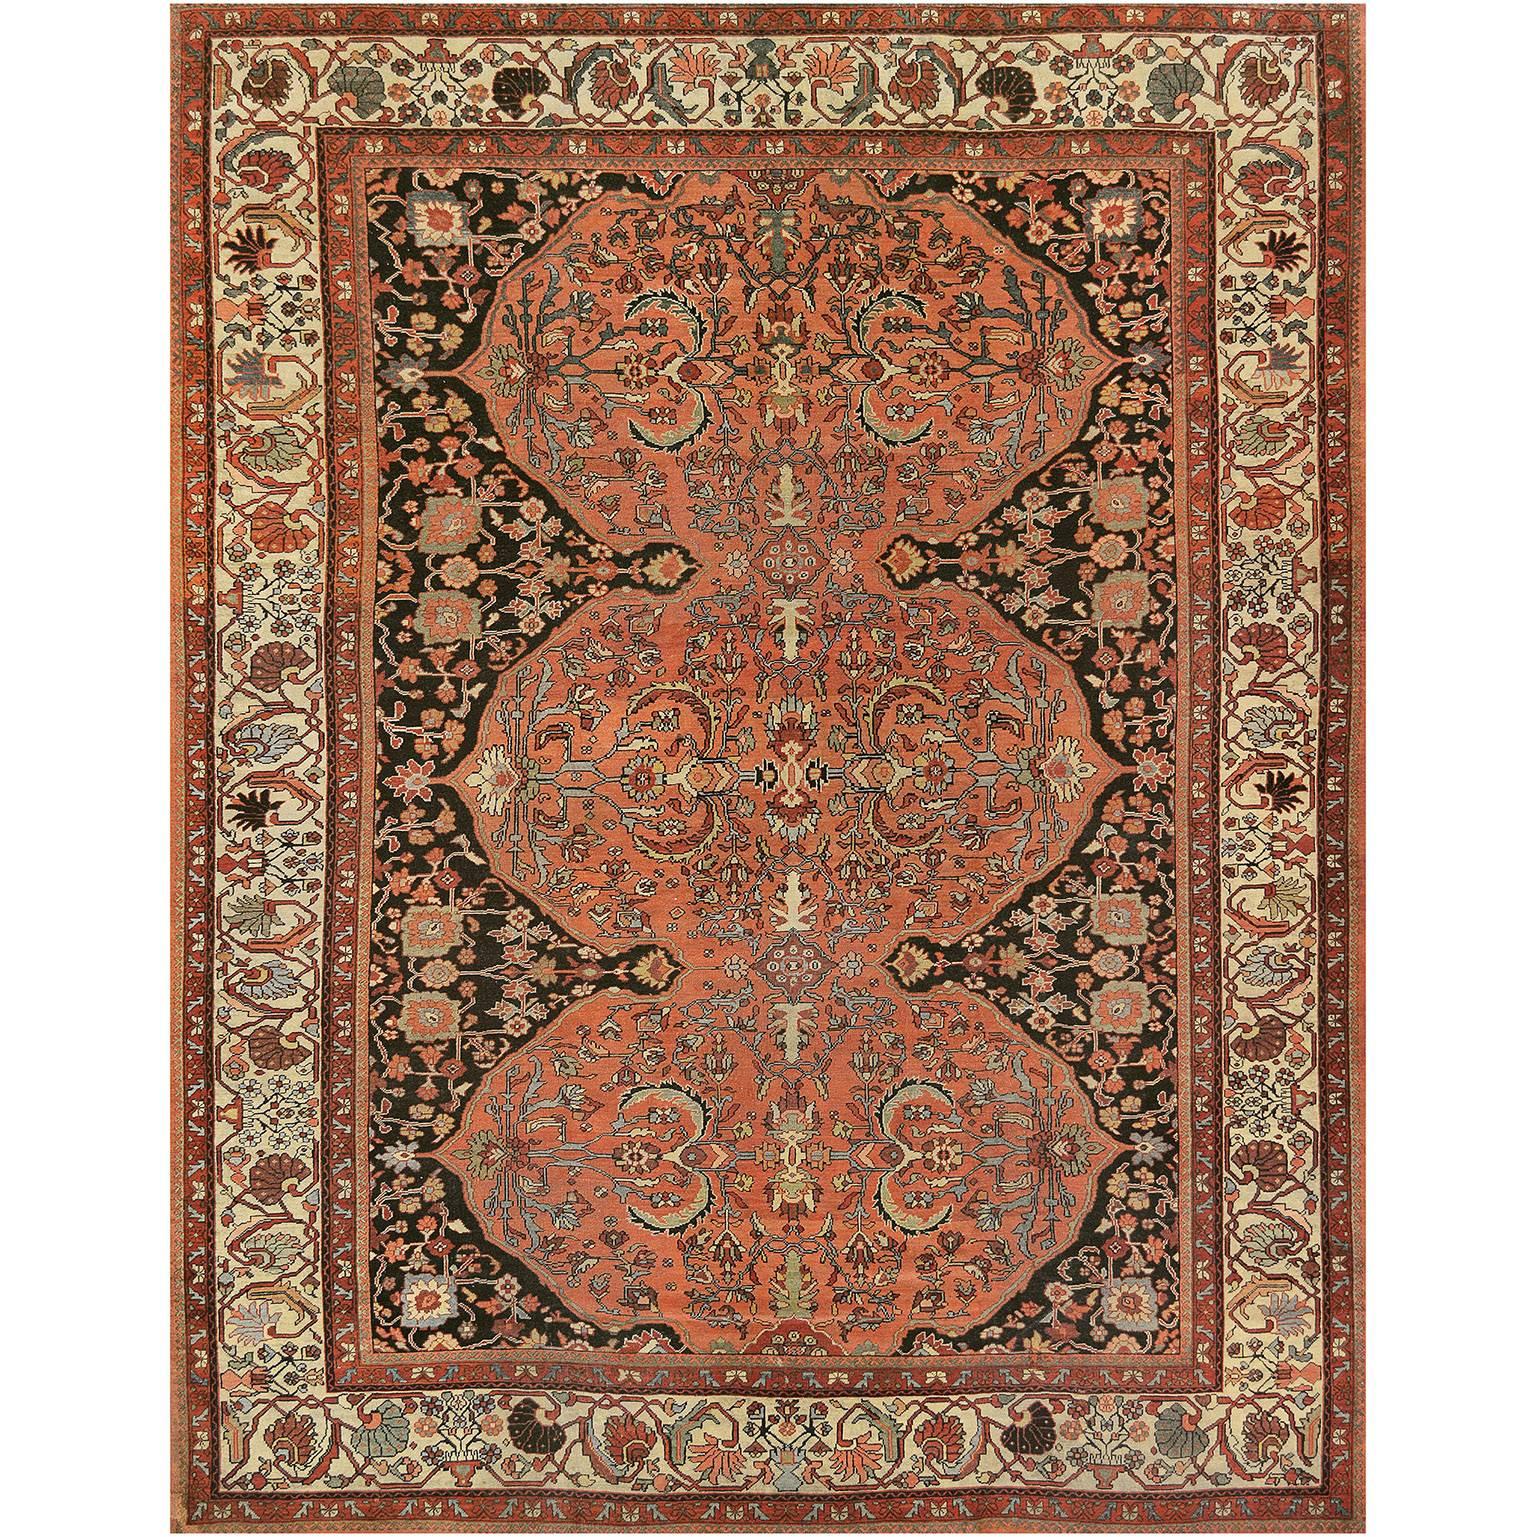 Fereghan-Teppich aus Westpersien aus dem frühen 20. Jahrhundert